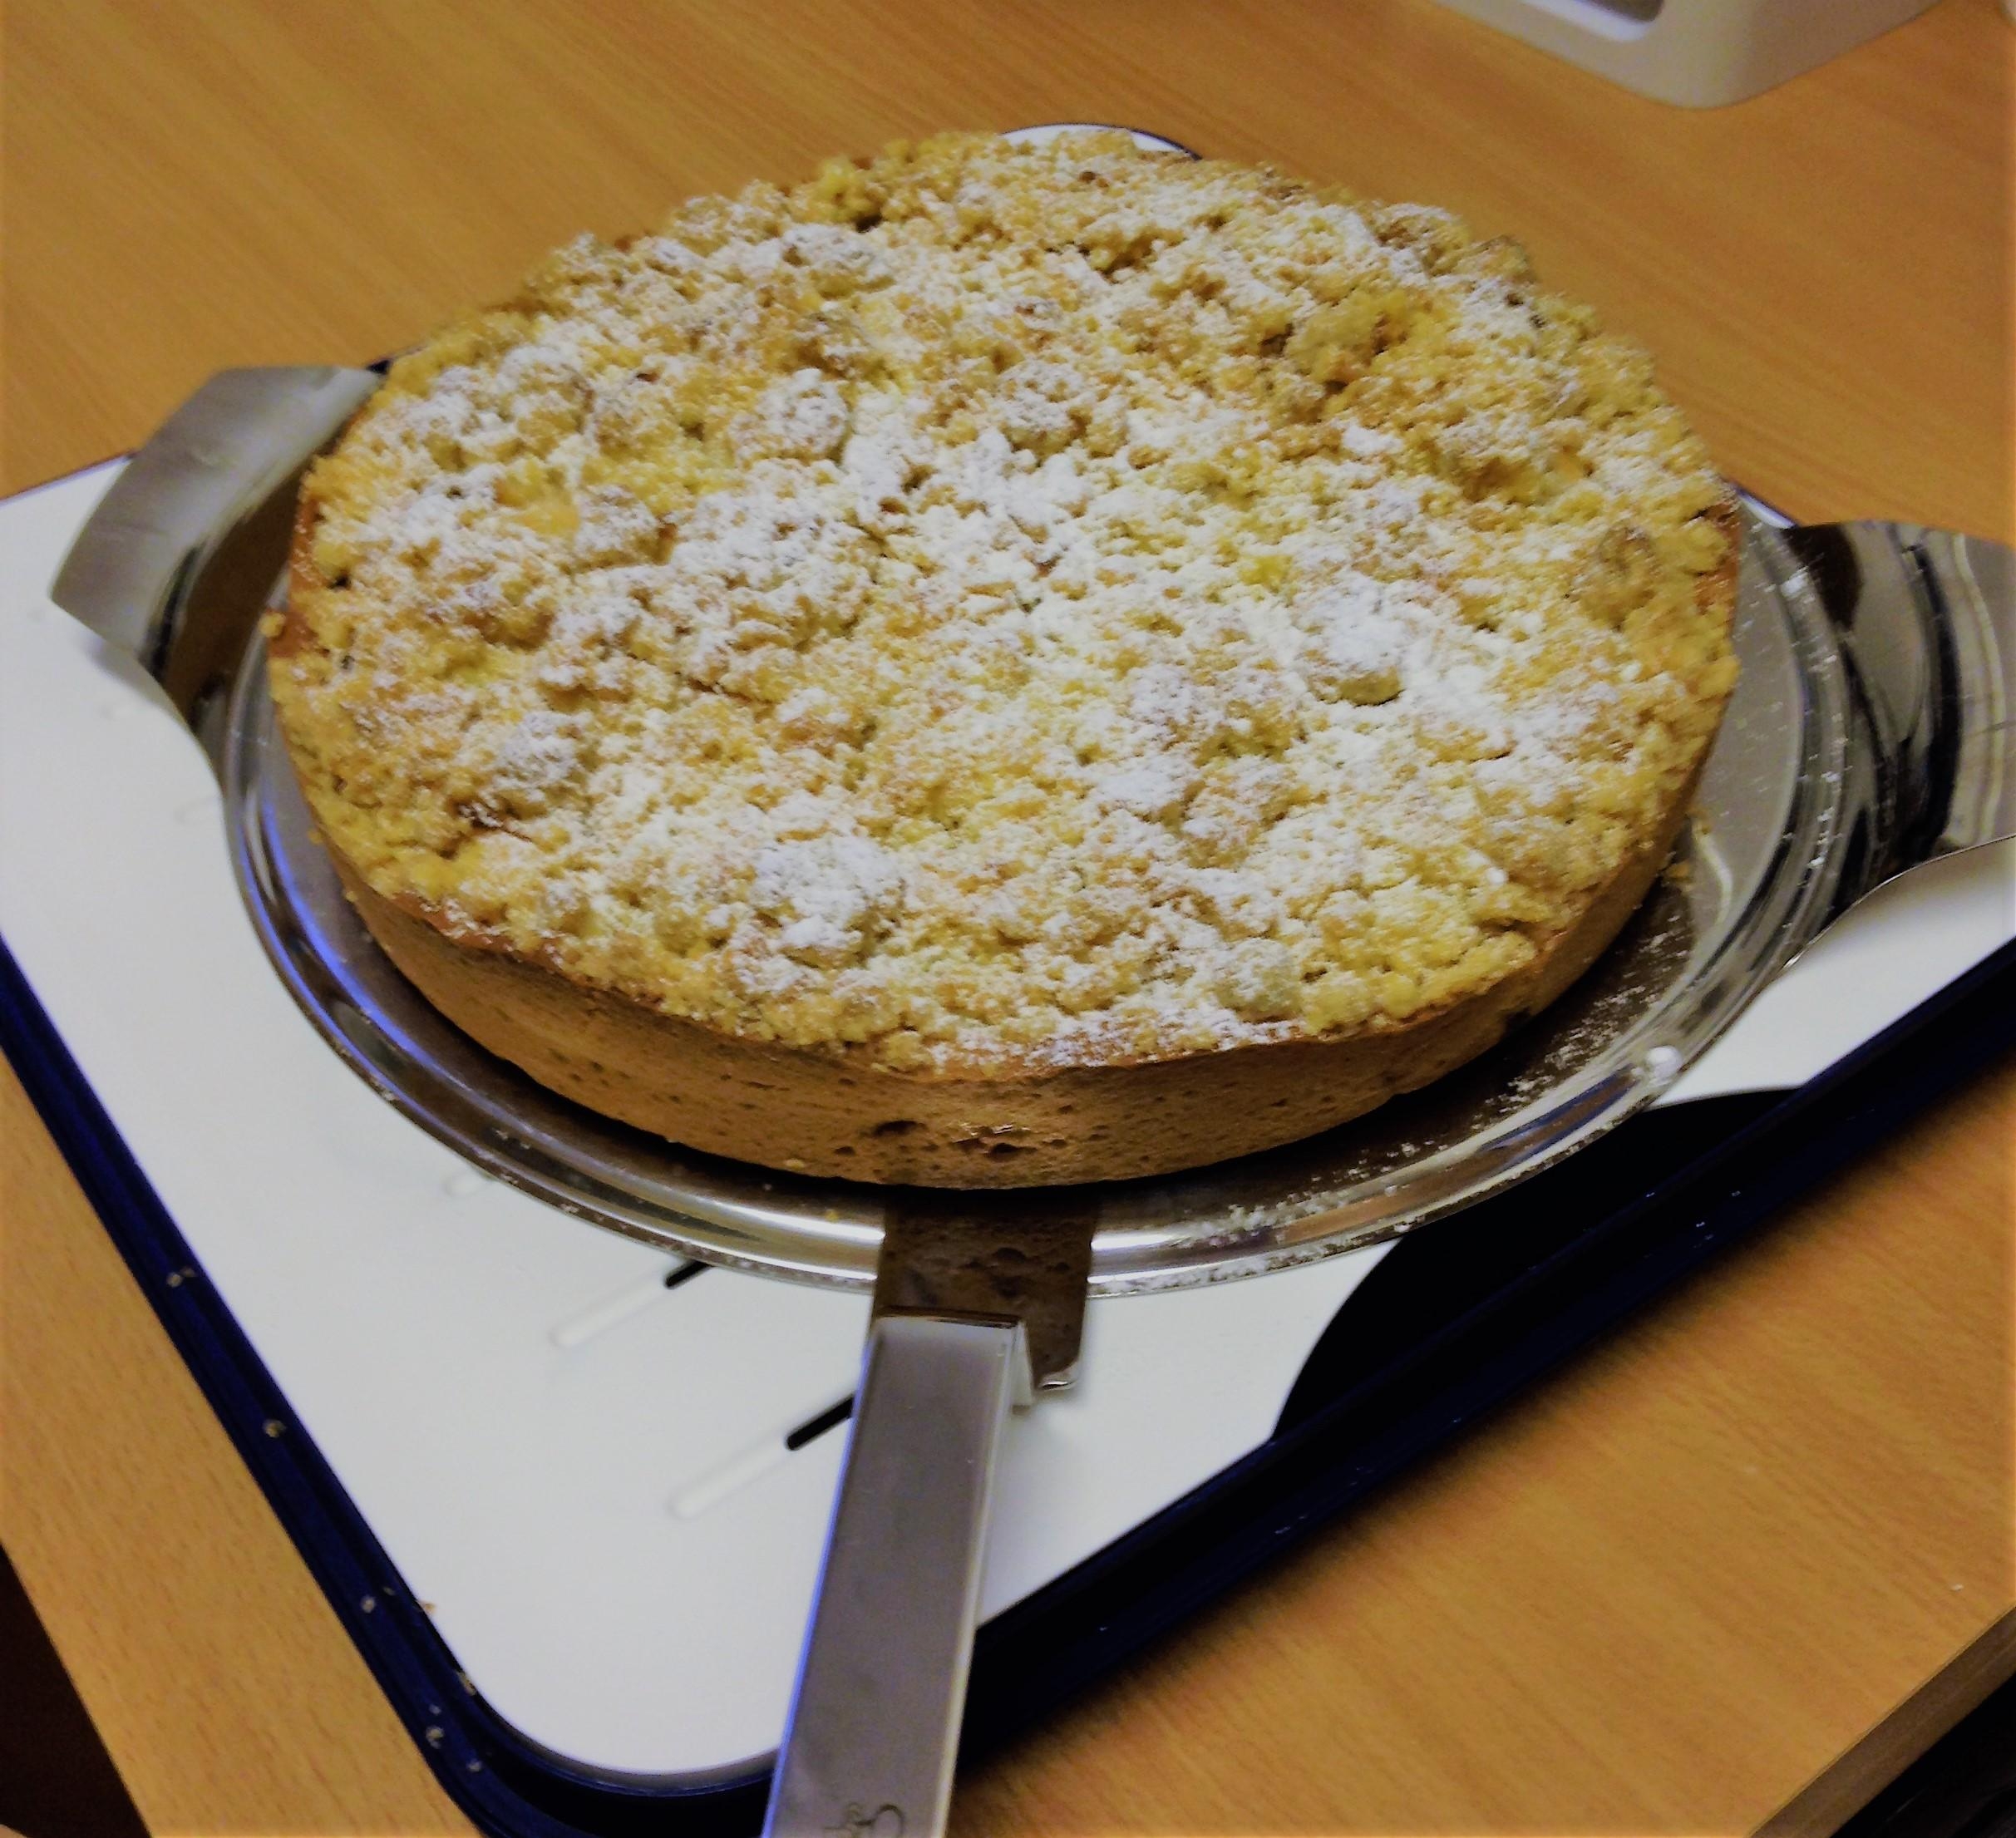 #kuchen #lieblingskuchen Wochenende = Kuchenzeit! Apfelkuchen mit Steusel darf auf unserer Kaffeetafel nicht fehlen !